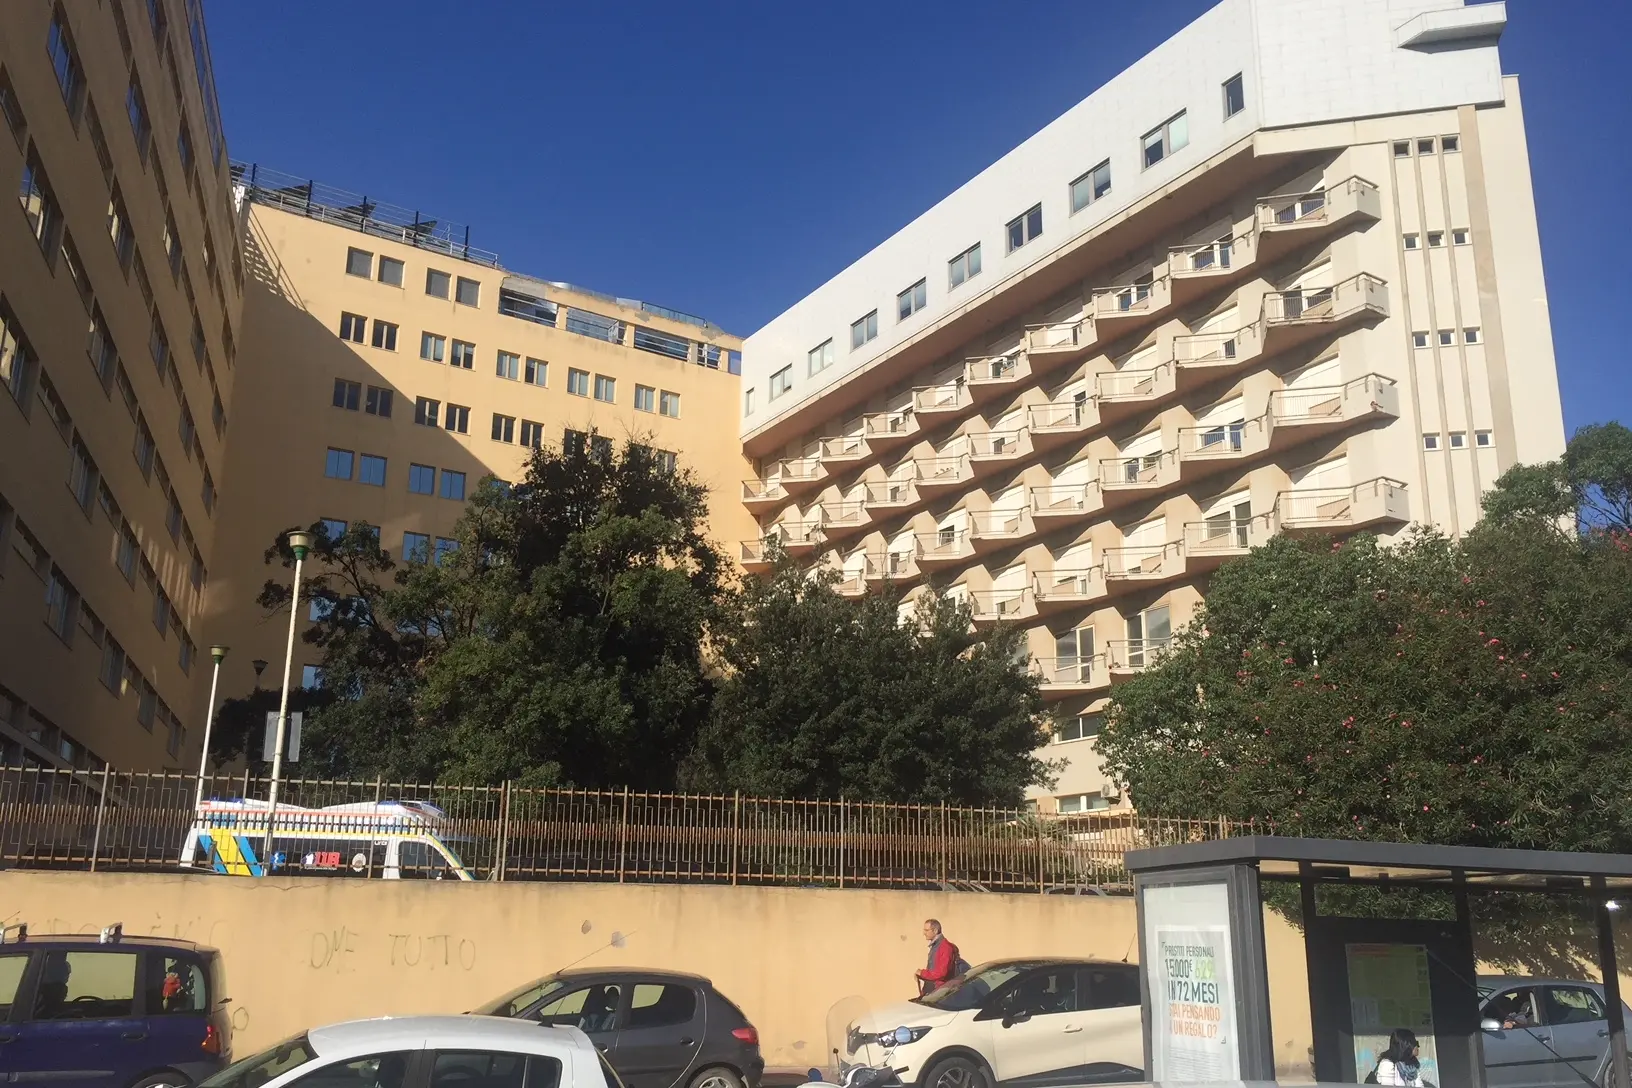 L'ospedale Businco di Cagliari (Archivio L'Unione Sarda)